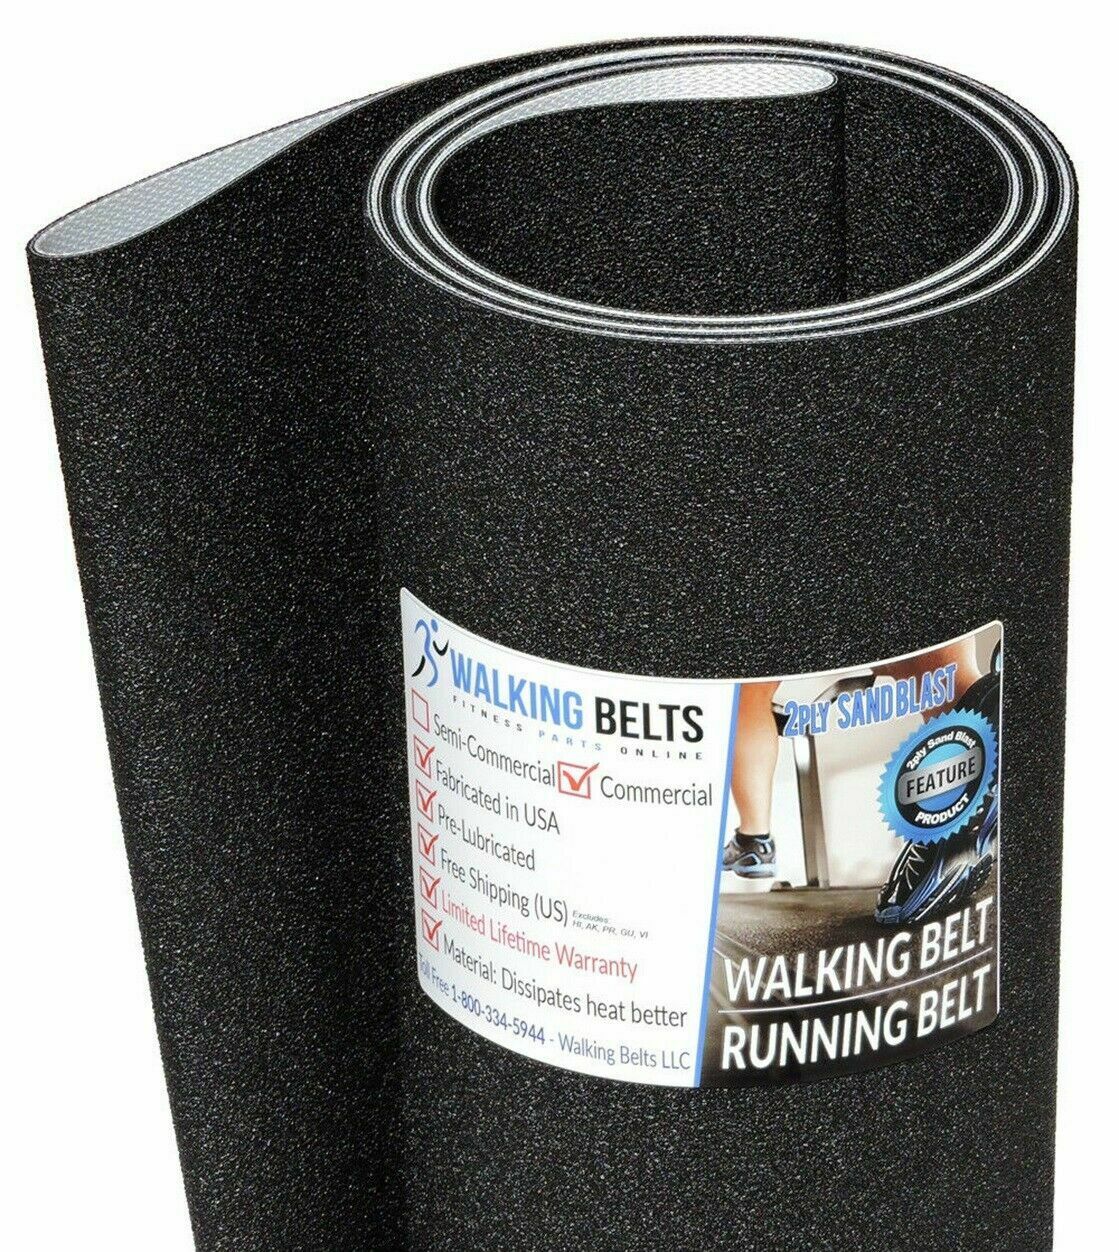 model RBTL159081 Less Friction Treadmill Walking/Running Belt Reebok 